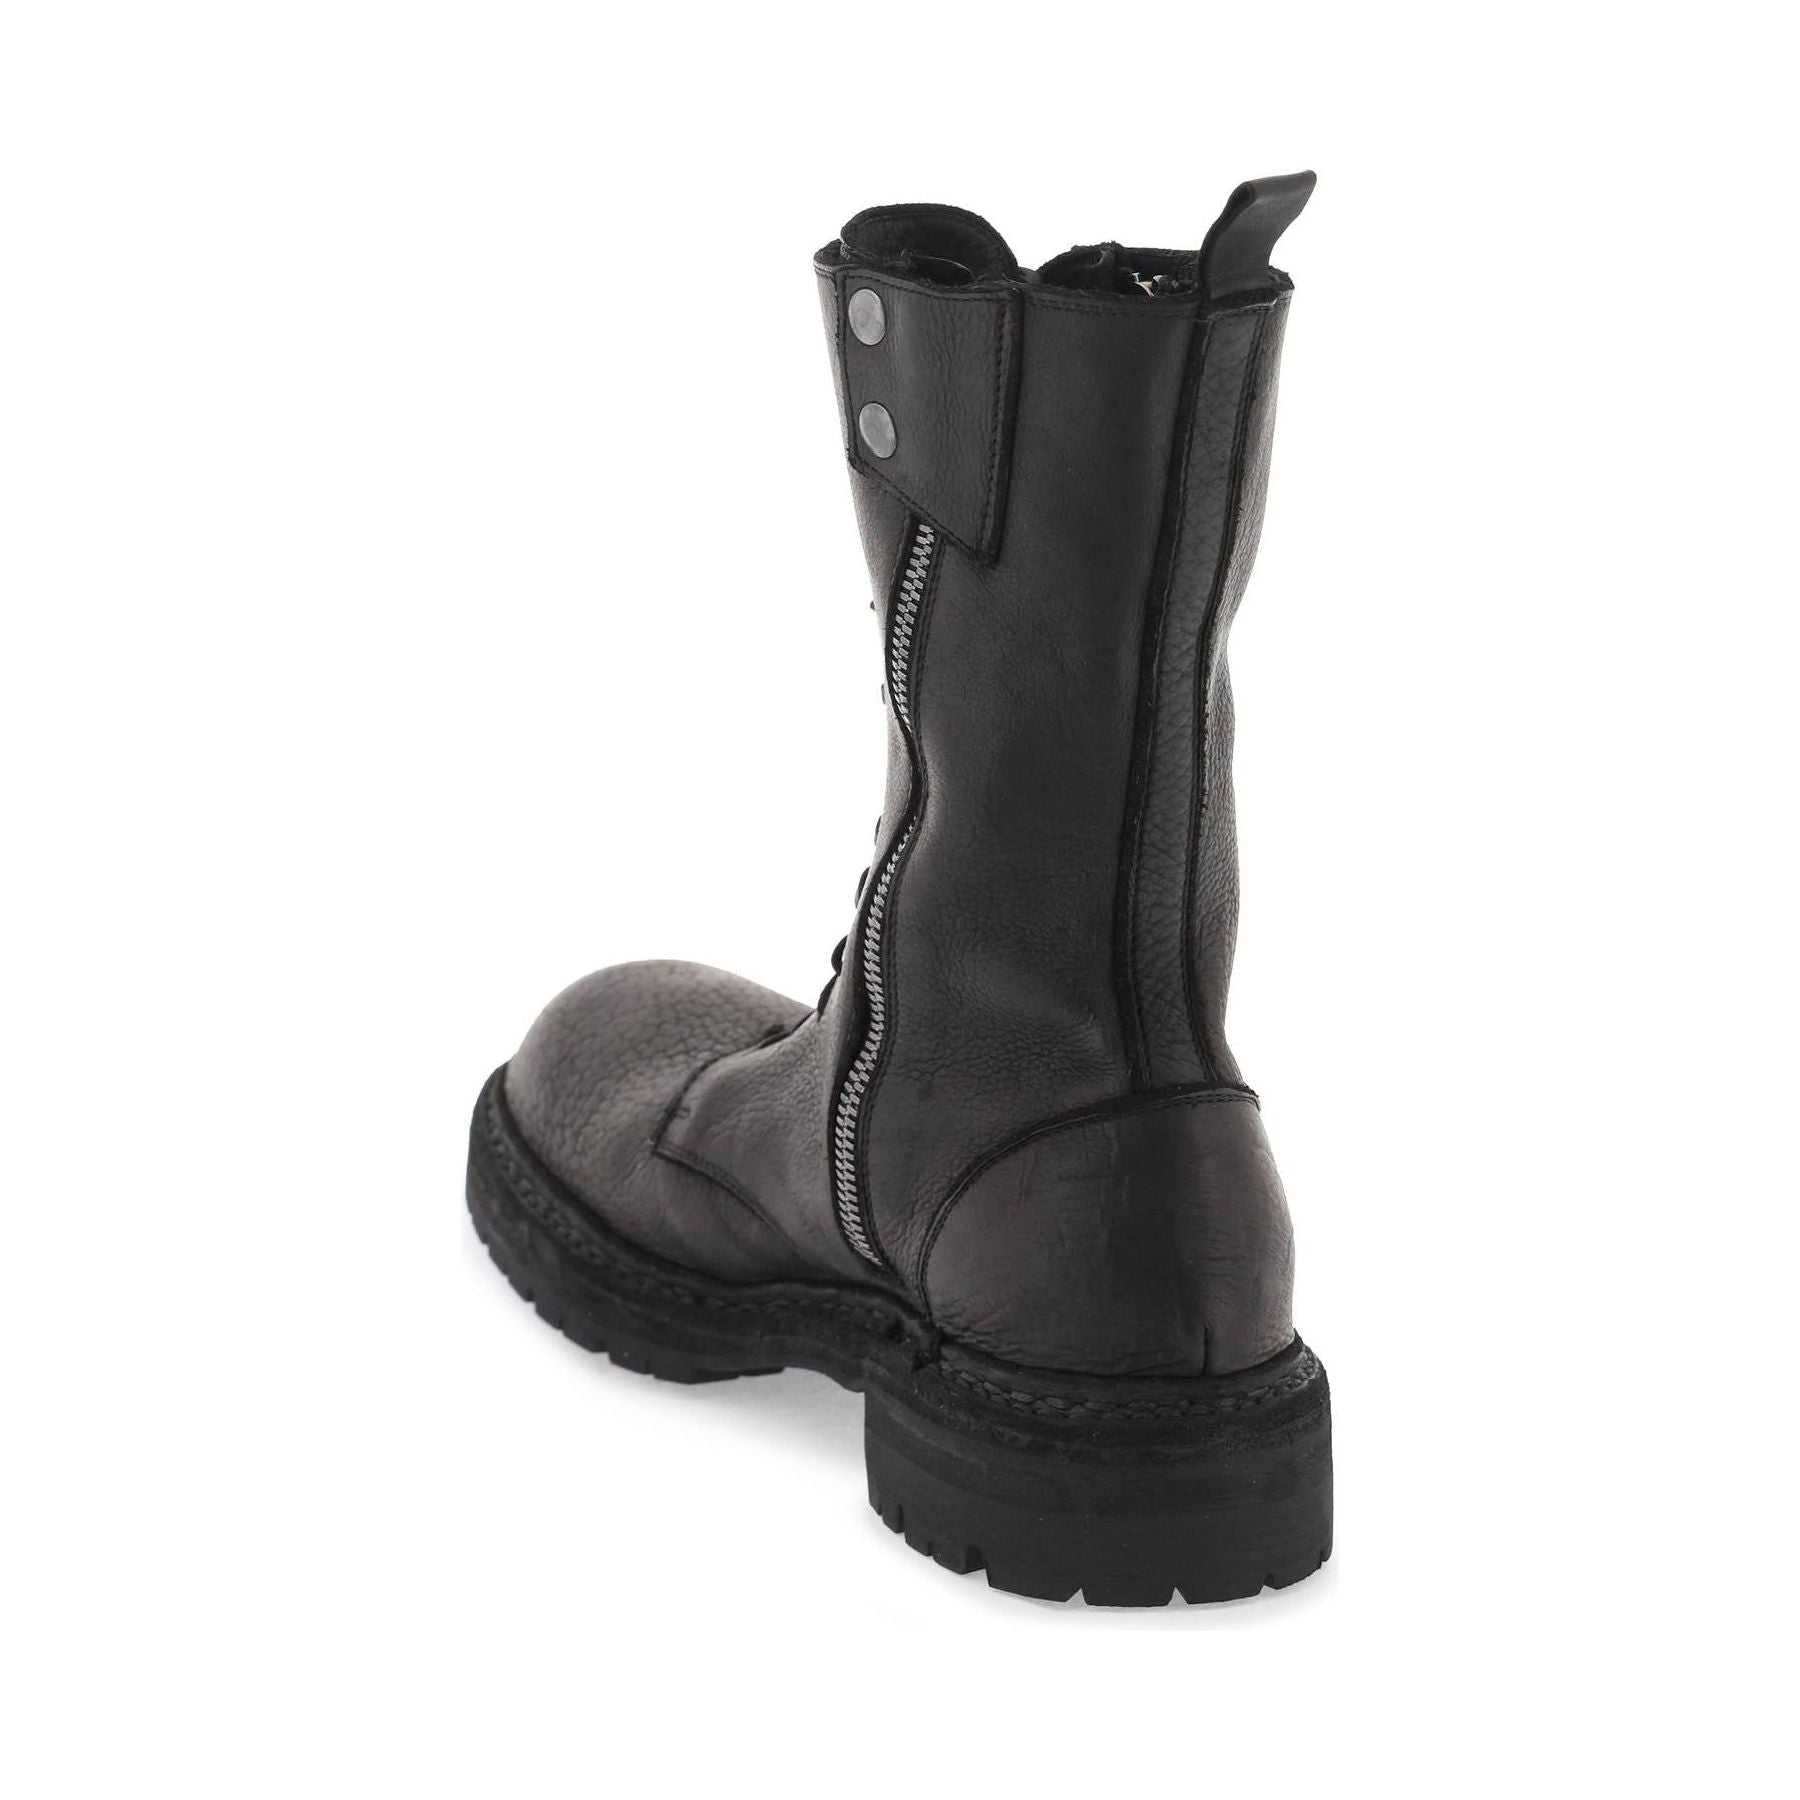 x SyleZeitgeist ER01V Hammered Leather Boots